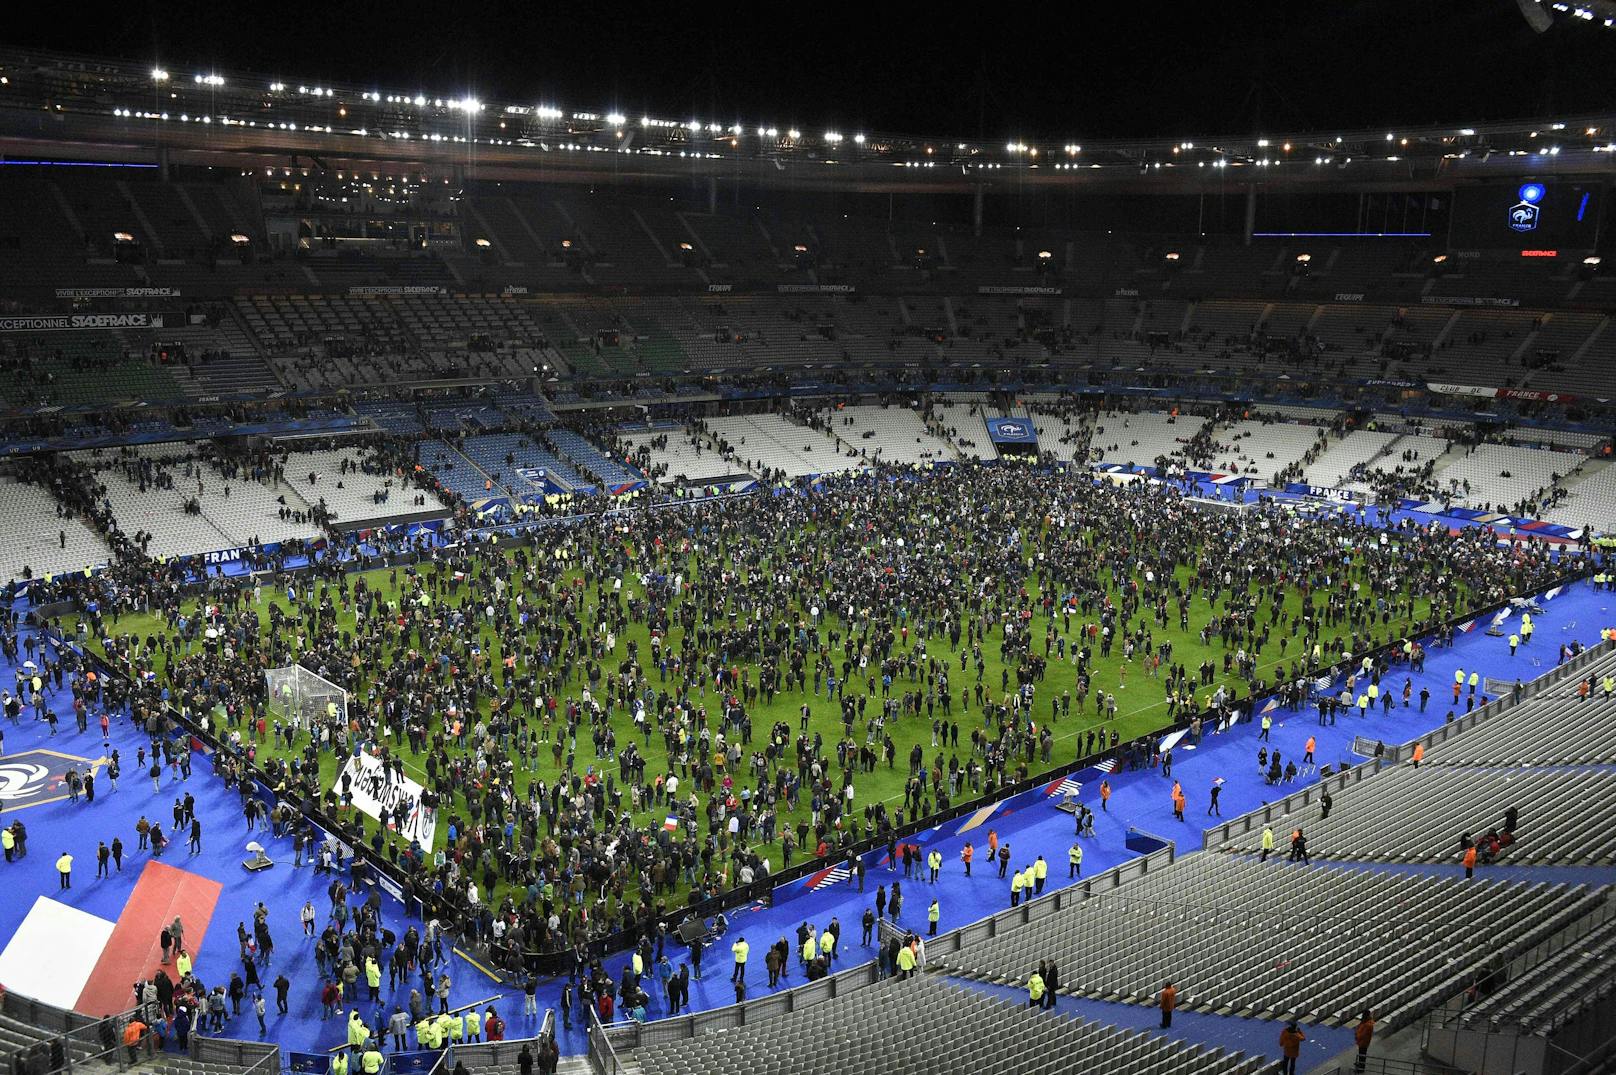 Am Stade de France sprengten sich zudem während des Fußball-Länderspiels Frankreich-Deutschland drei Selbstmordattentäter in die Luft.